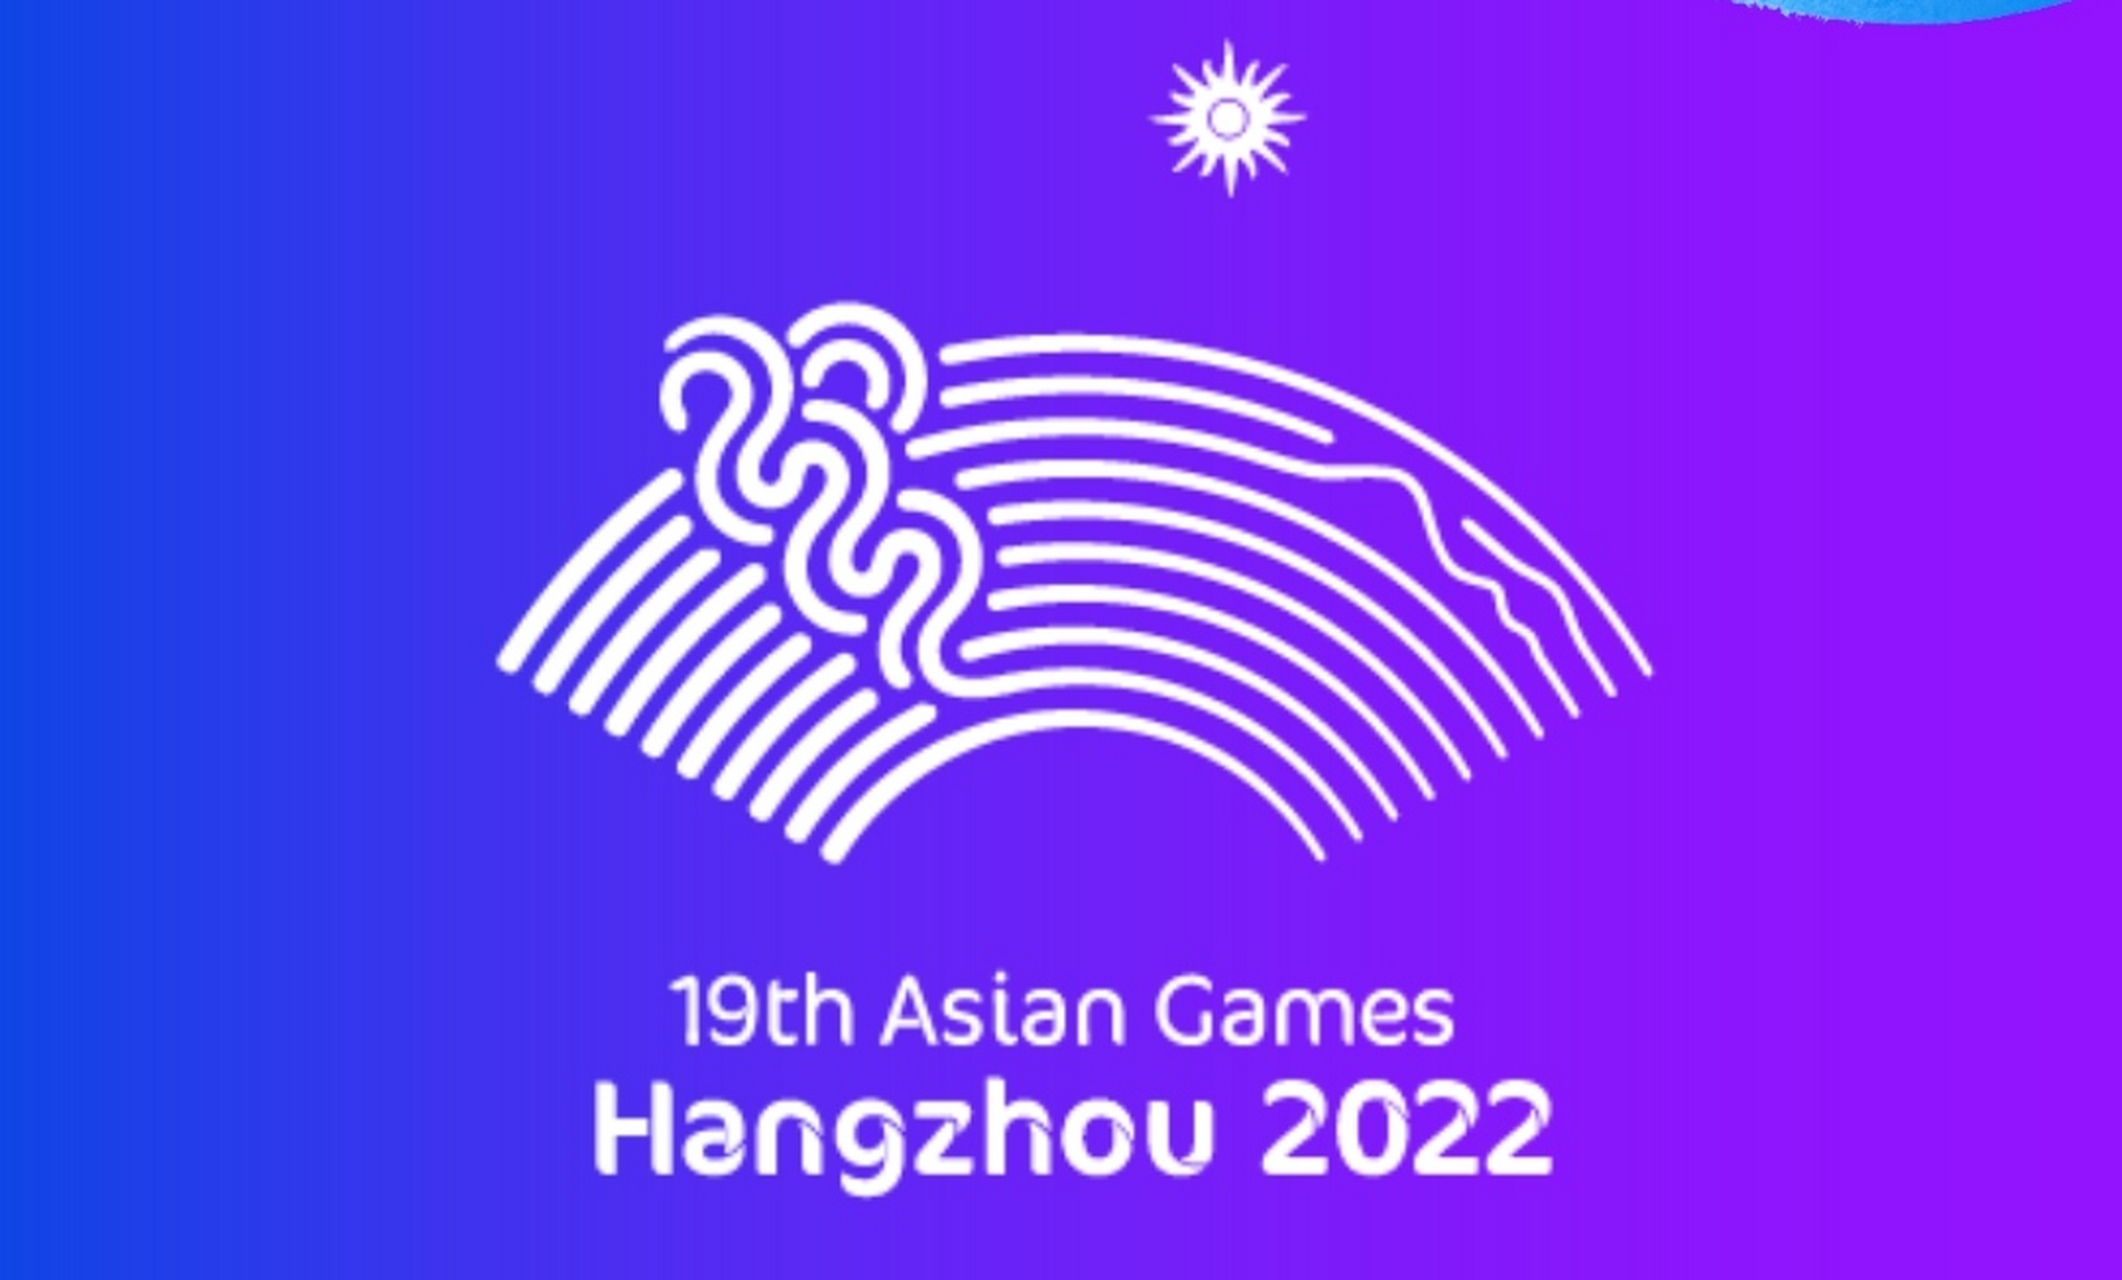 2022年杭州亚运会会徽图片